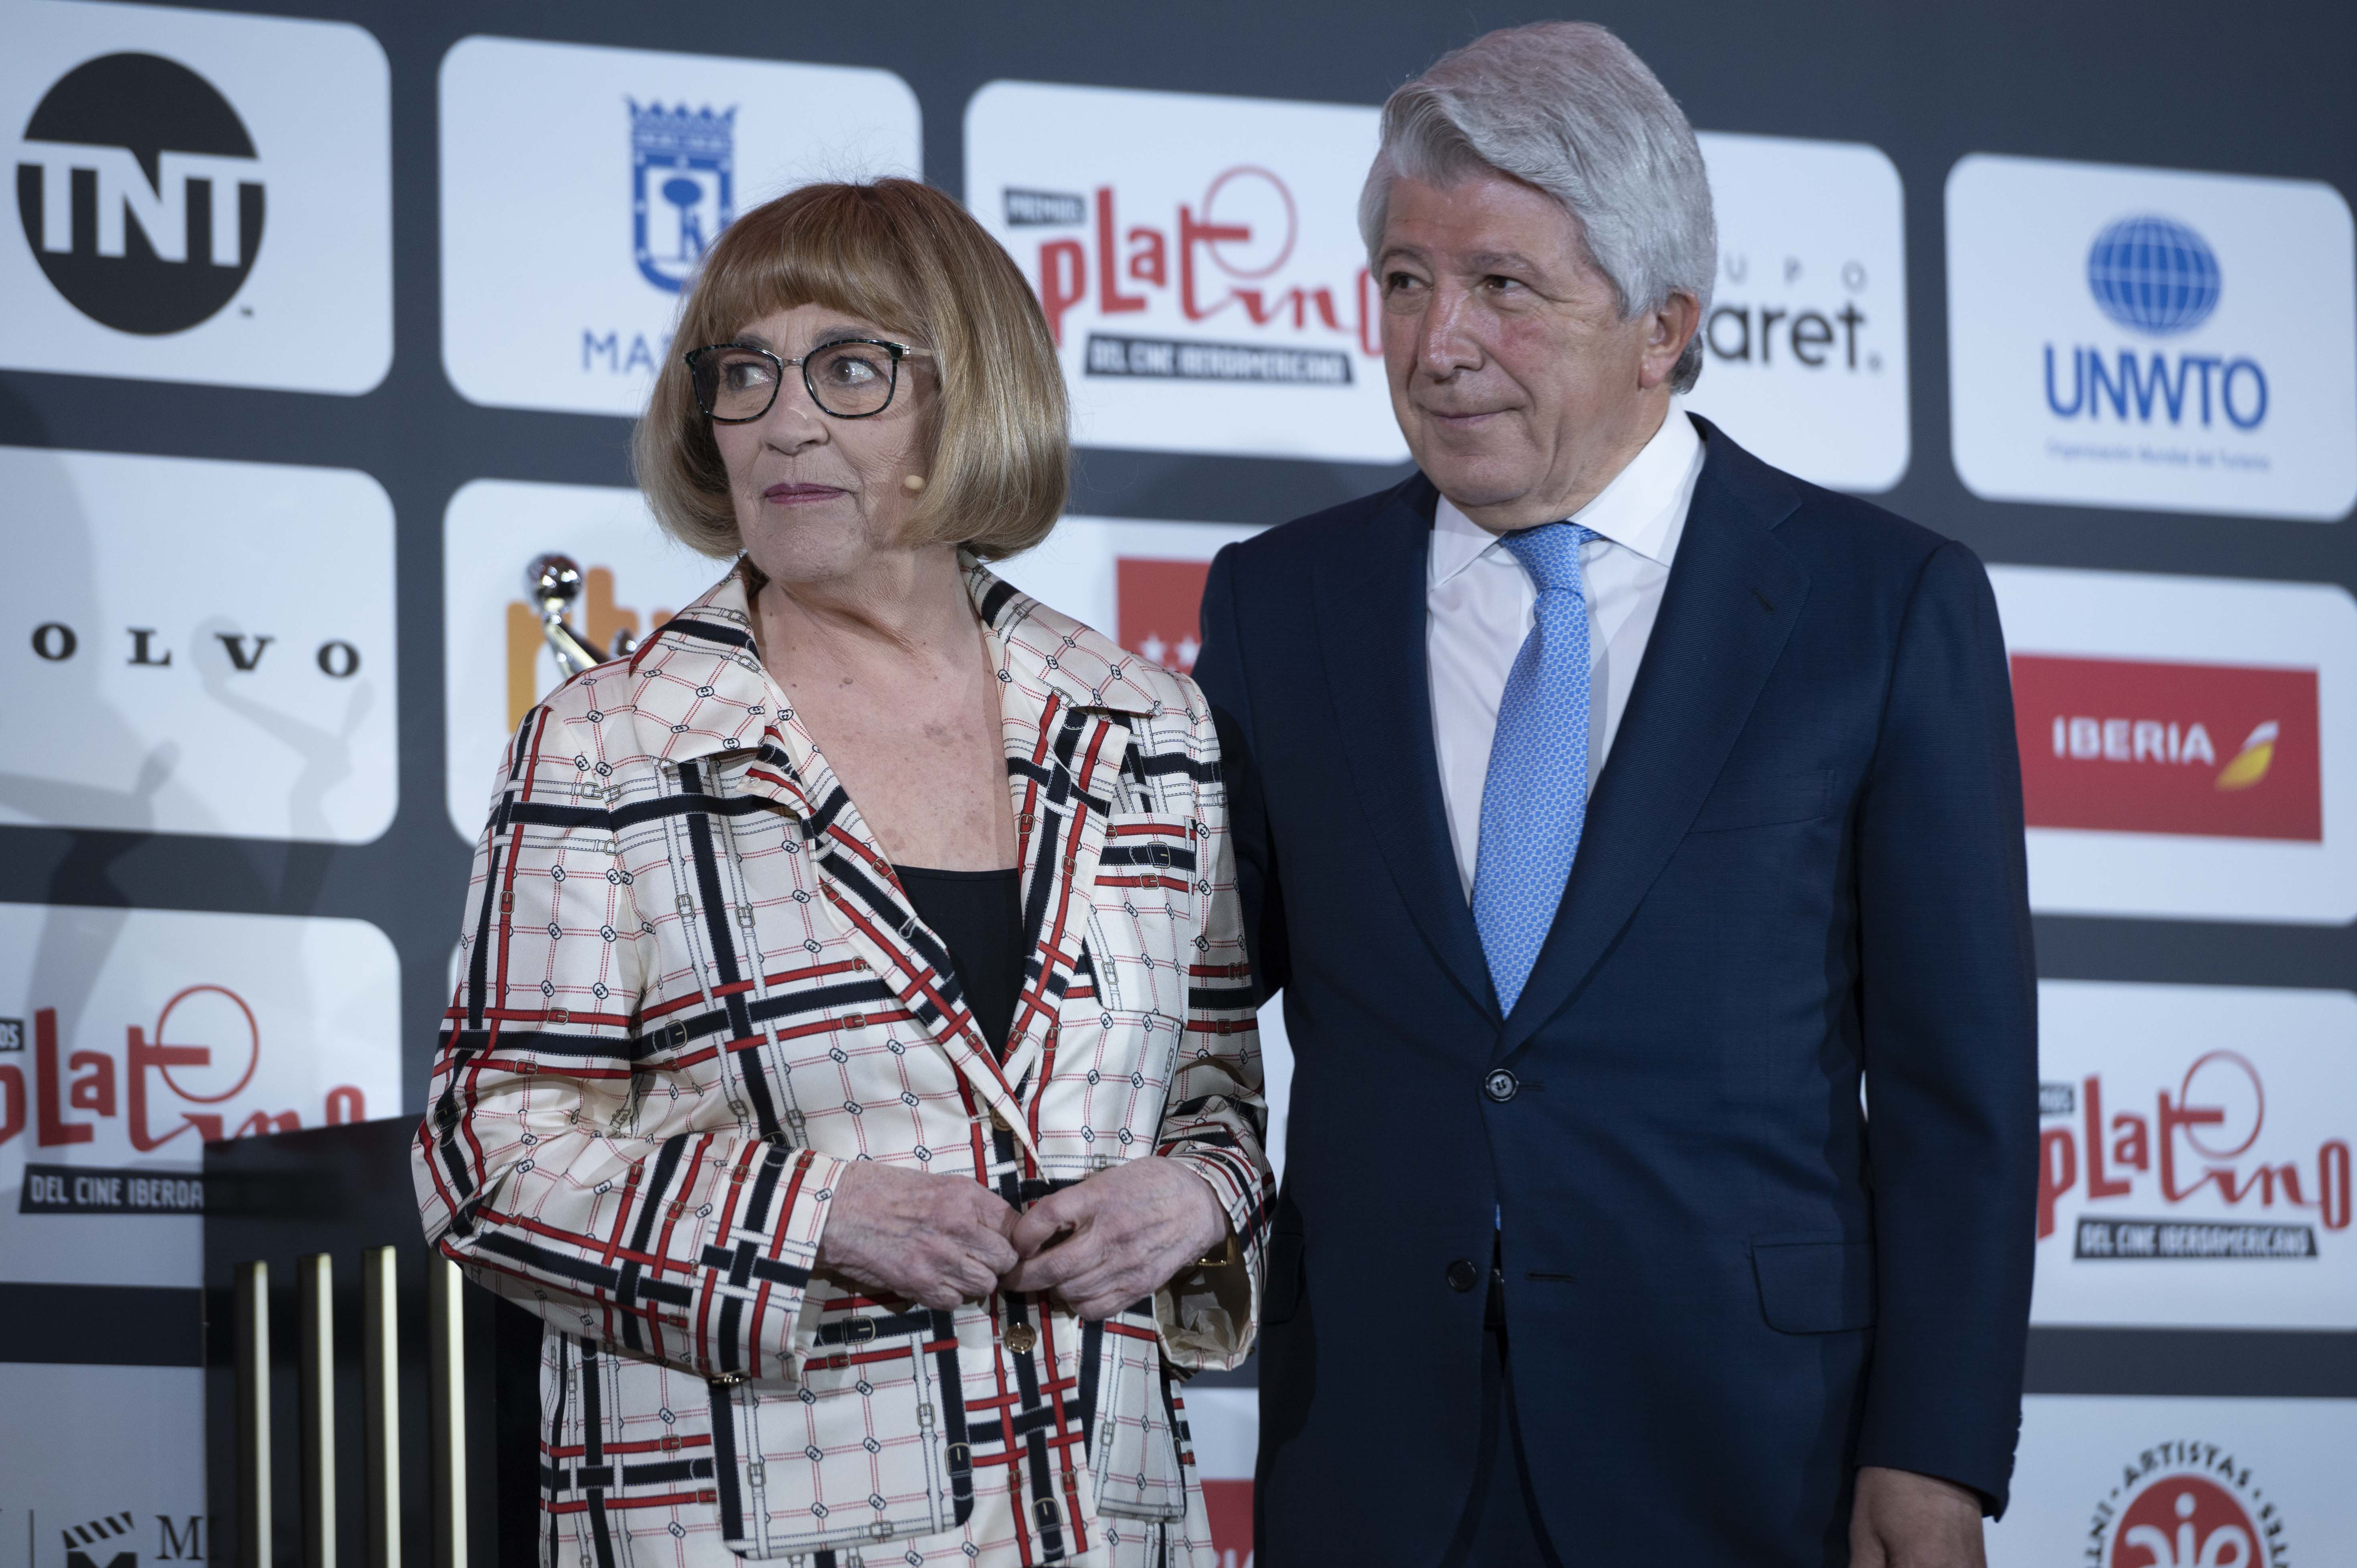 Carmen Maura and Enrique Cerezo, Executive Chairman of the Platino Awards